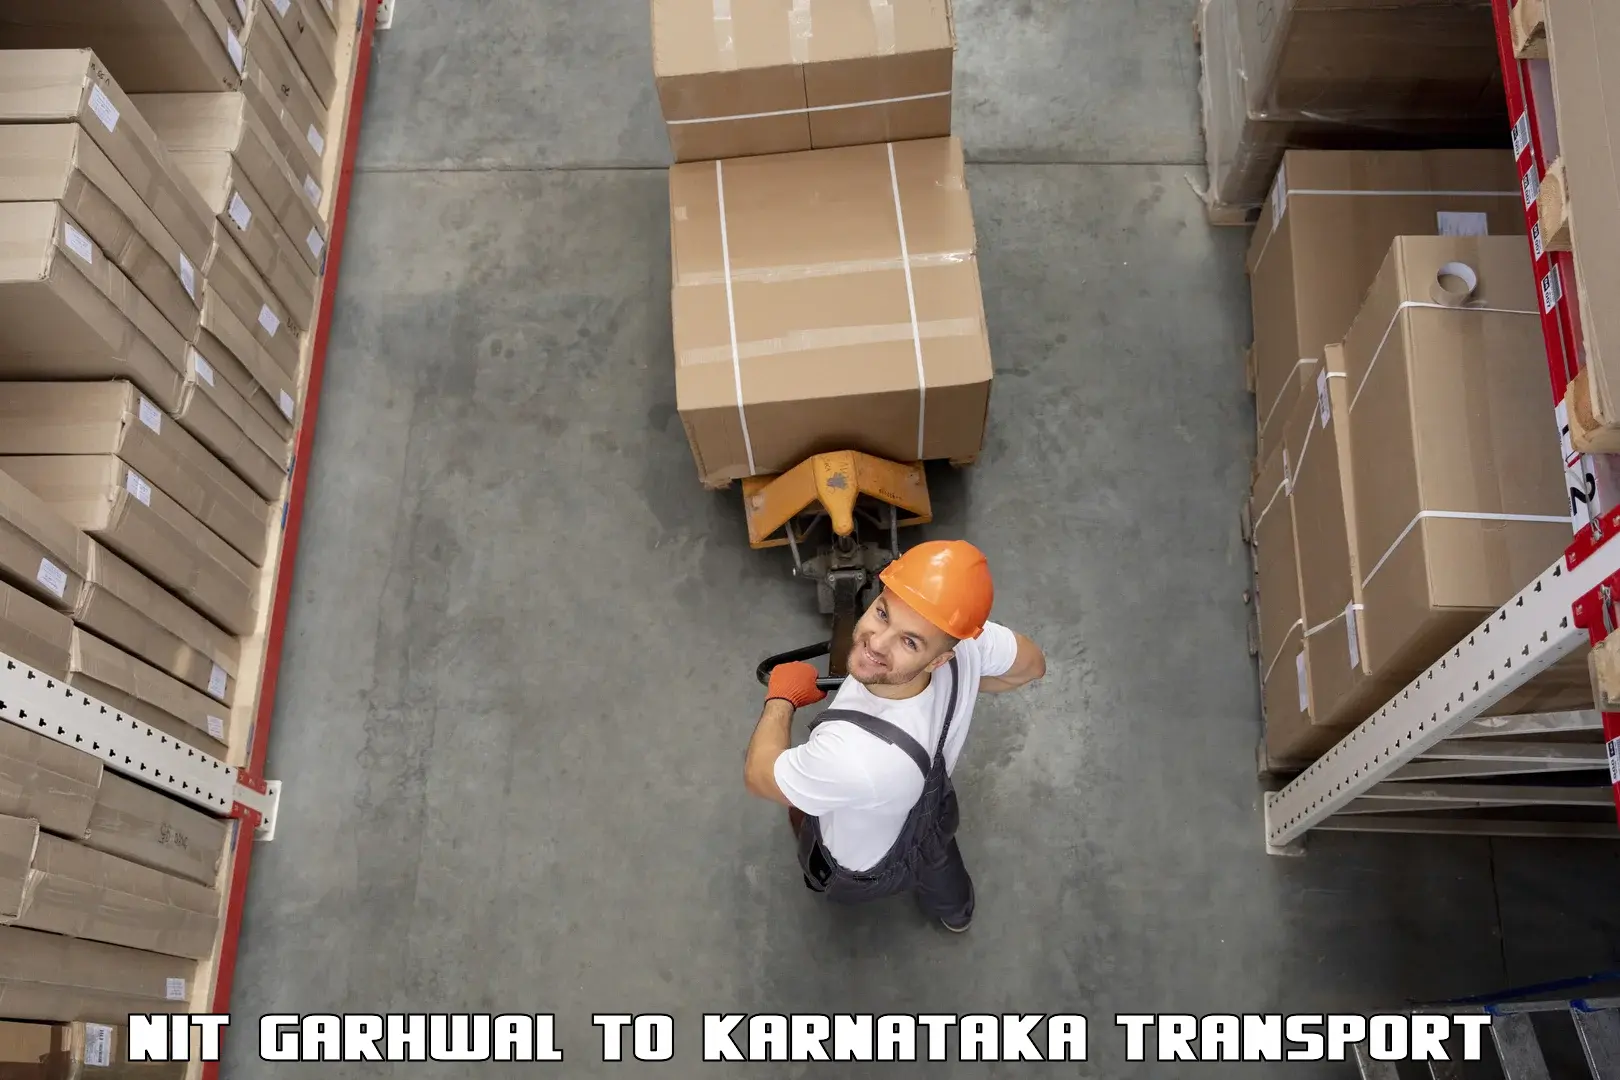 Daily transport service NIT Garhwal to Savanur